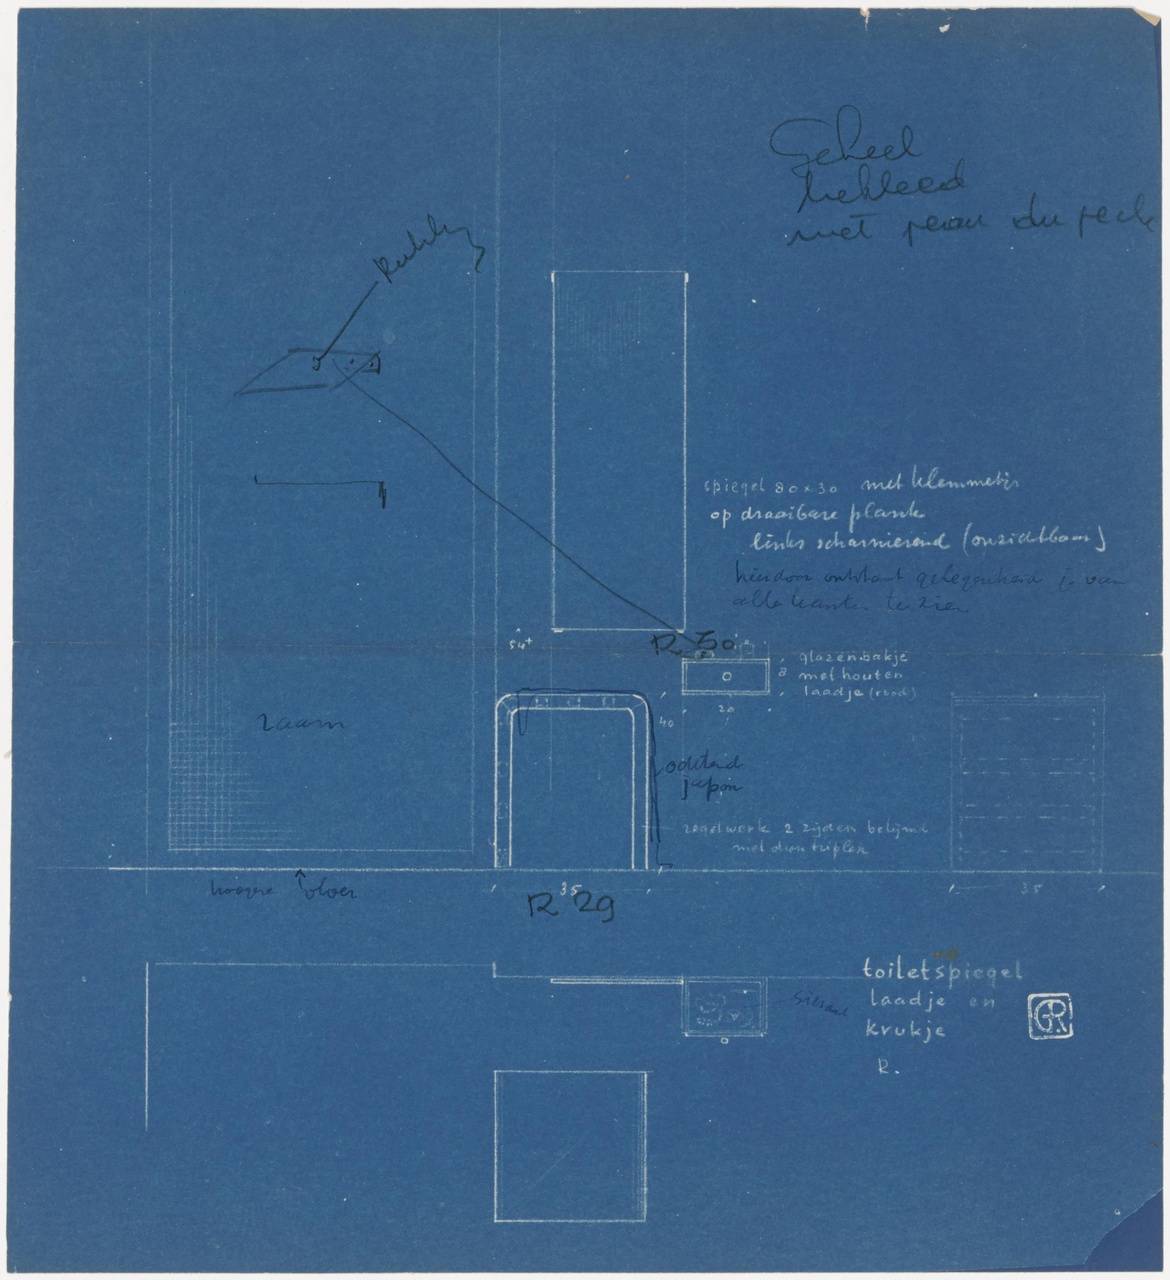 Woonslaapkamer 'de nieuwe woning' , Metz & Co, 's-Gravenhage, toiletspiegel met laatje; compositie van spiegel, ladekastje en krukje R 29/30